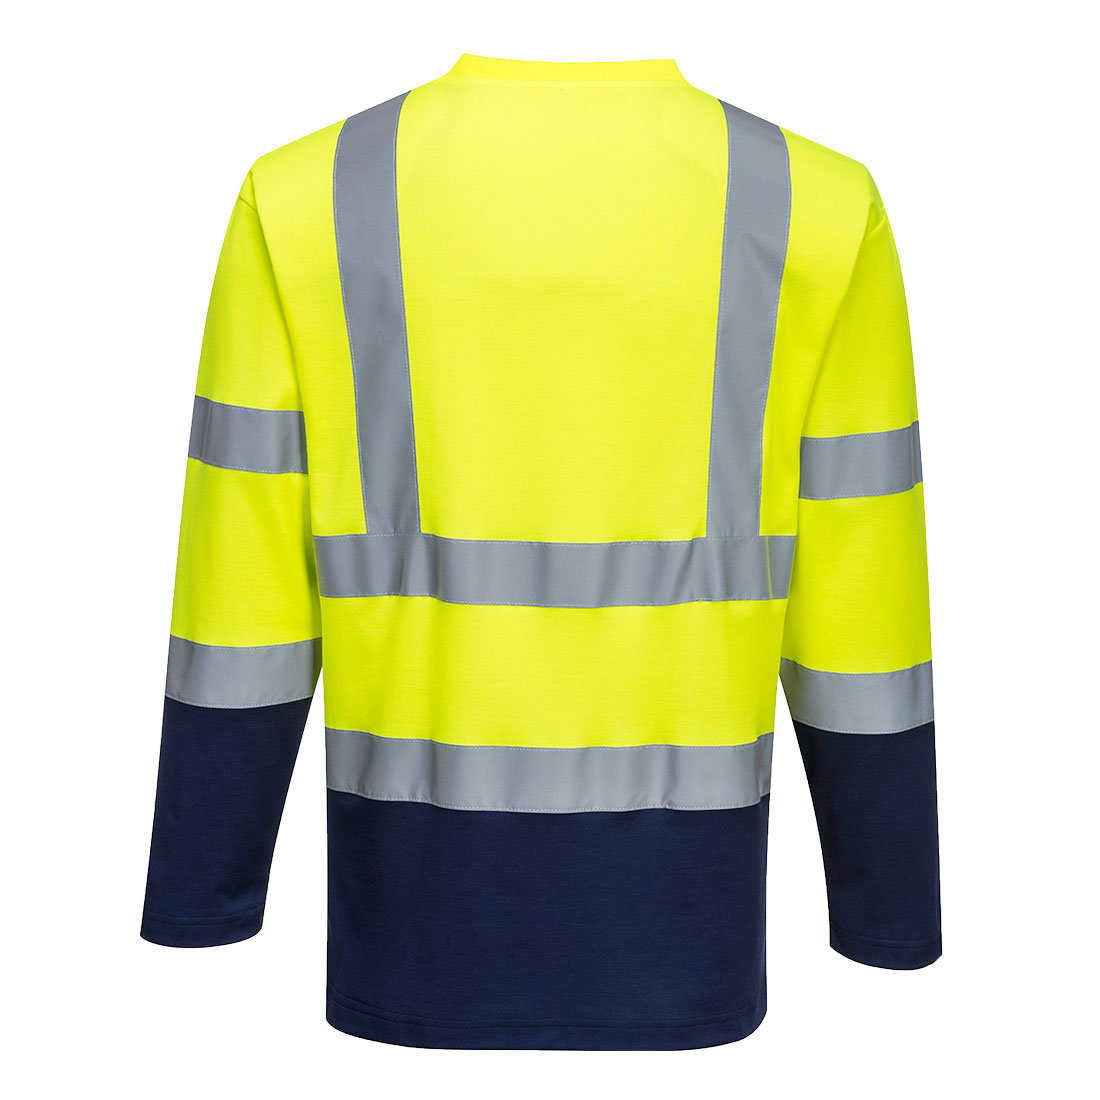 Camiseta Trabajo Con Reflectivo Hi-viz Amarilla Manga Larga - Garimport